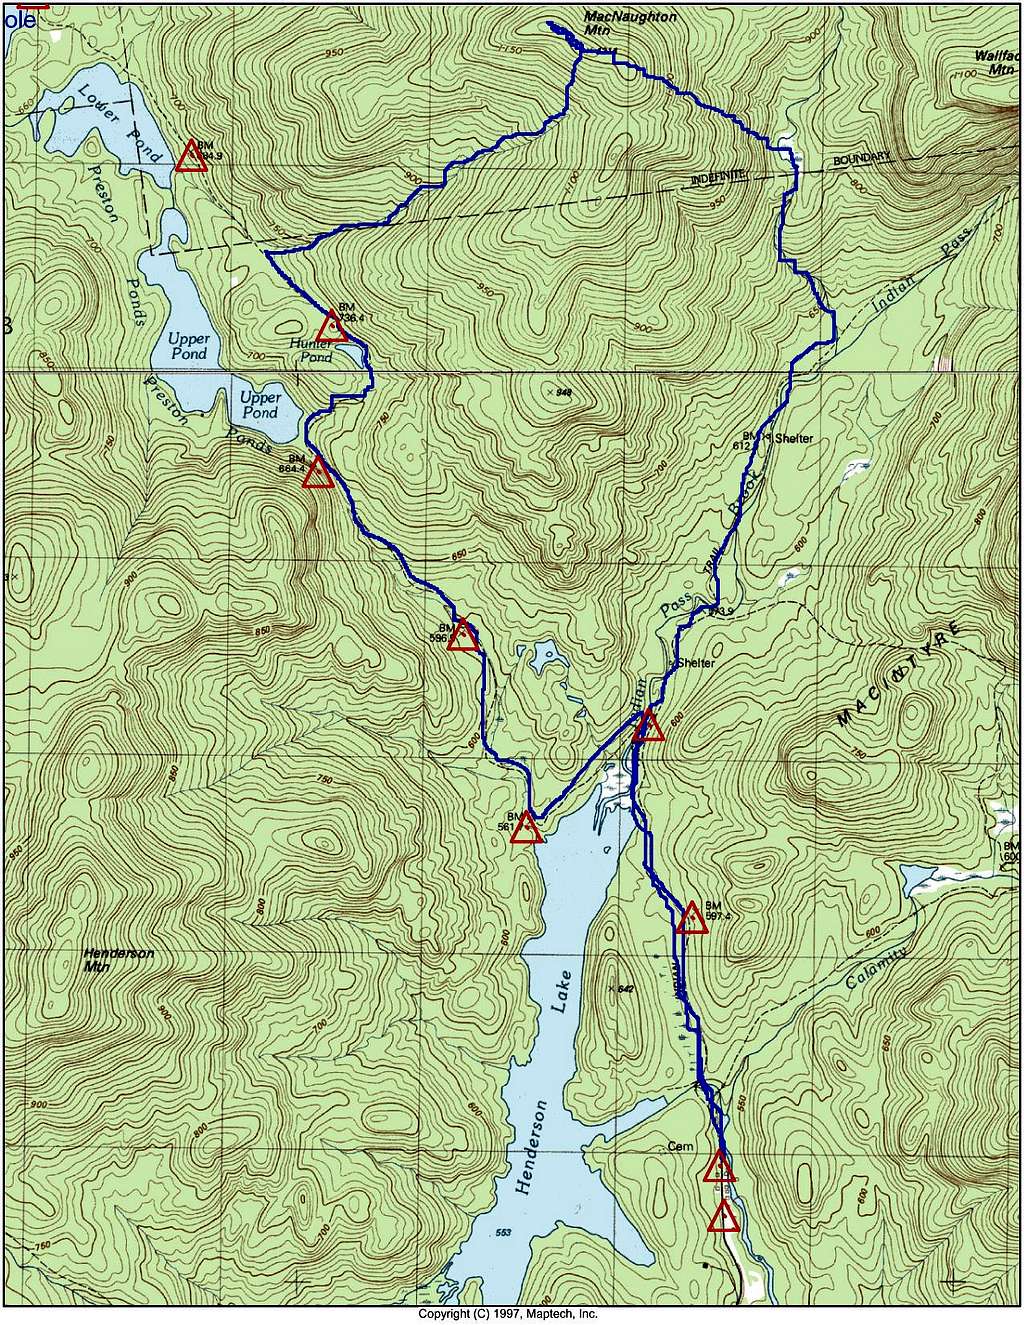 Topo Map of MacNaughton Route